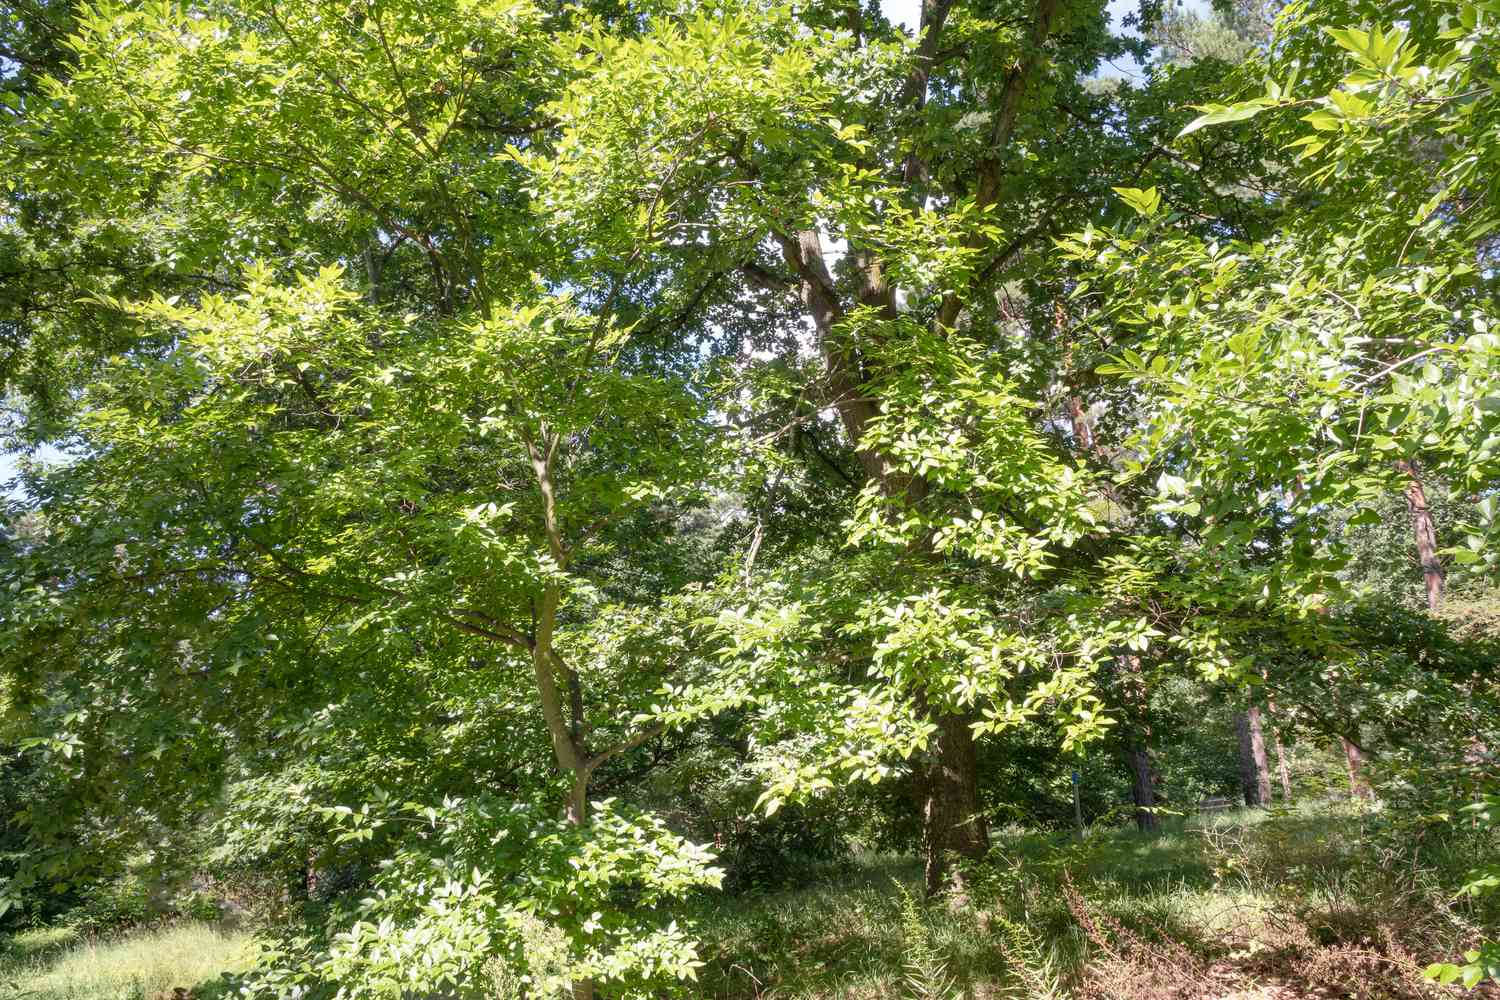 Netleaf hackberry tree in wooded area